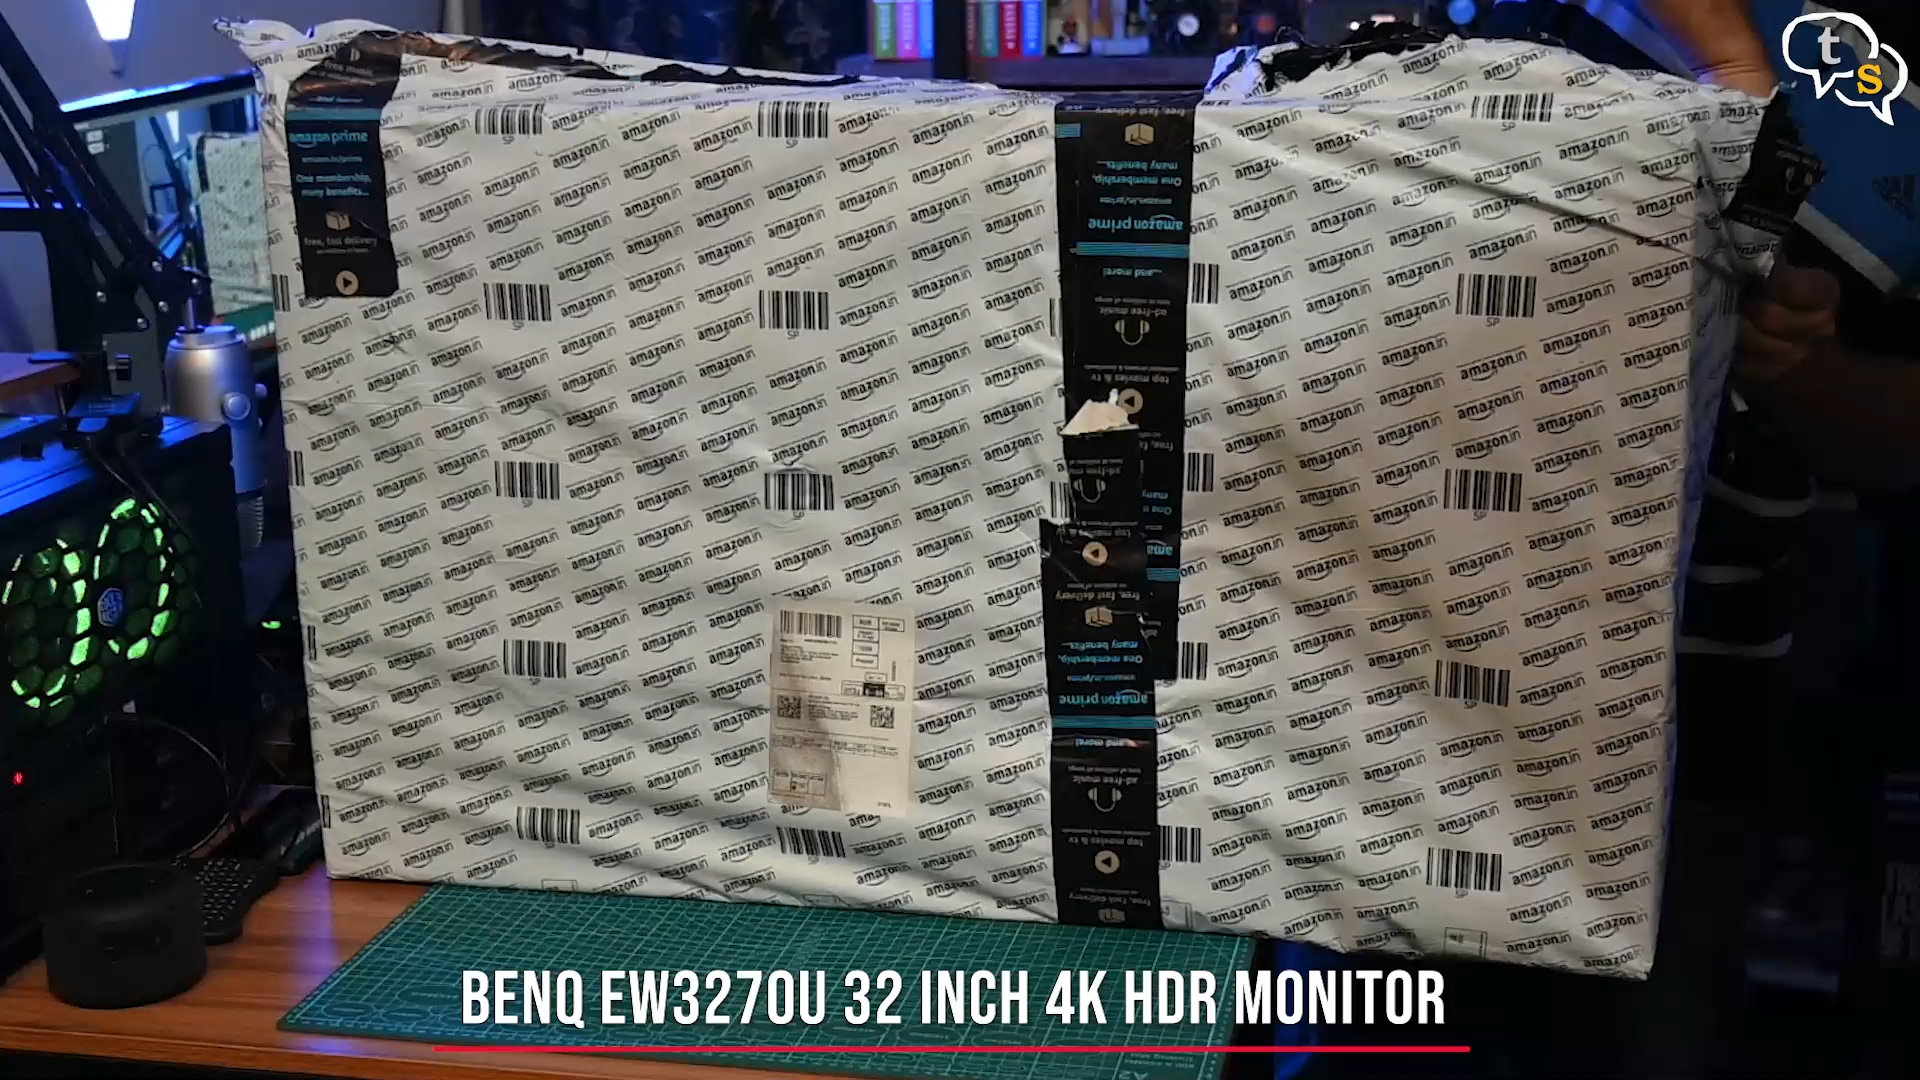 BenQ EW3270U 4K HDR monitor unboxing